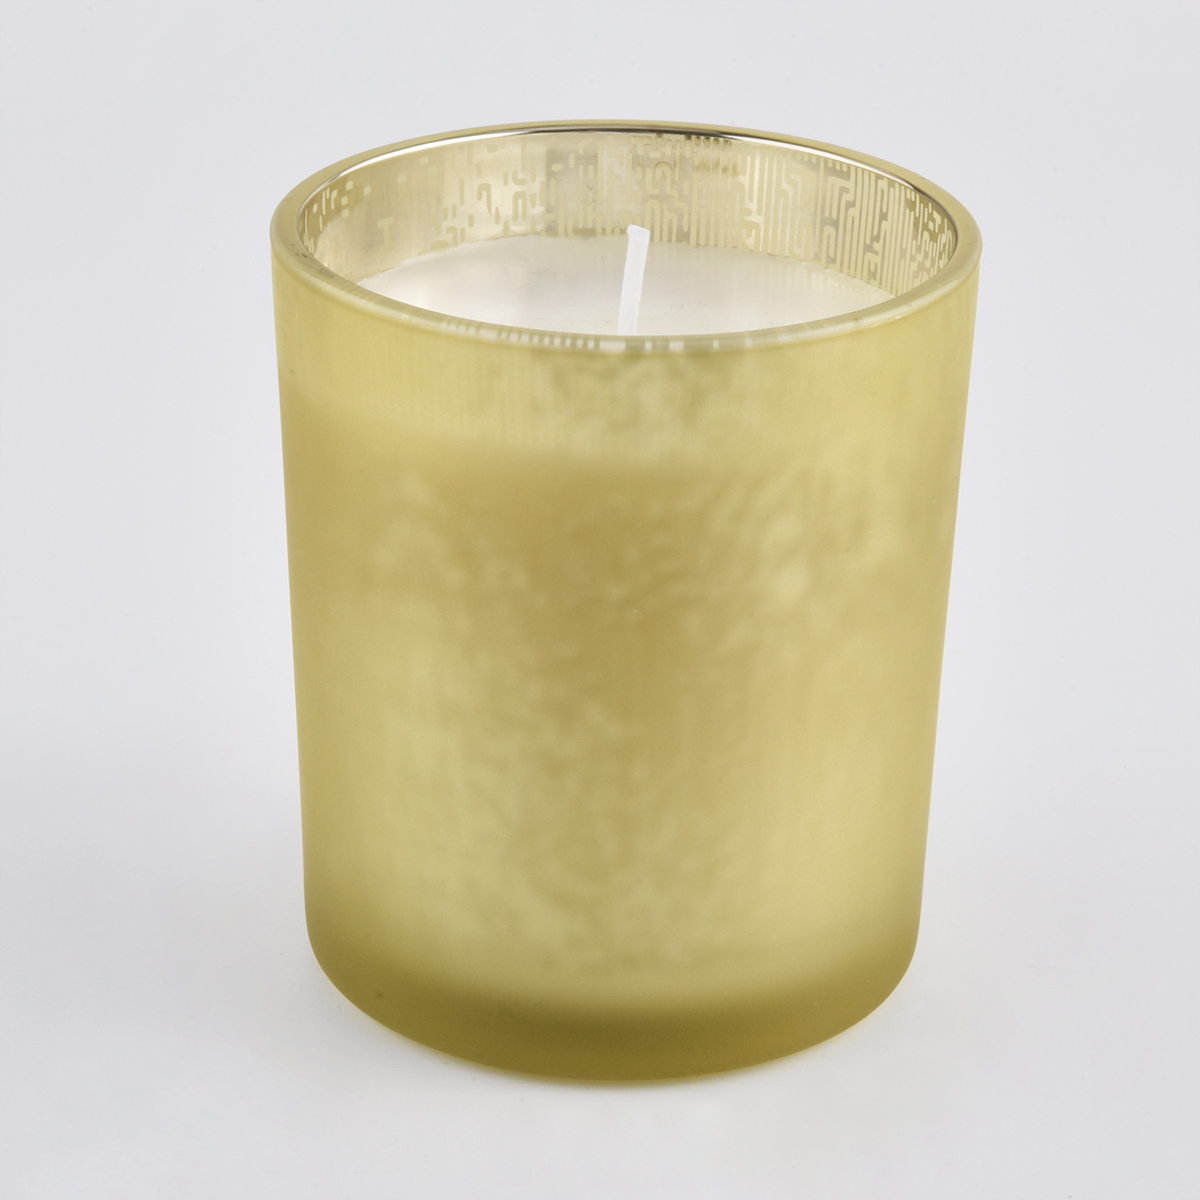 Kynttiläinen keltainen lasipisto kynttilän valmistukseen